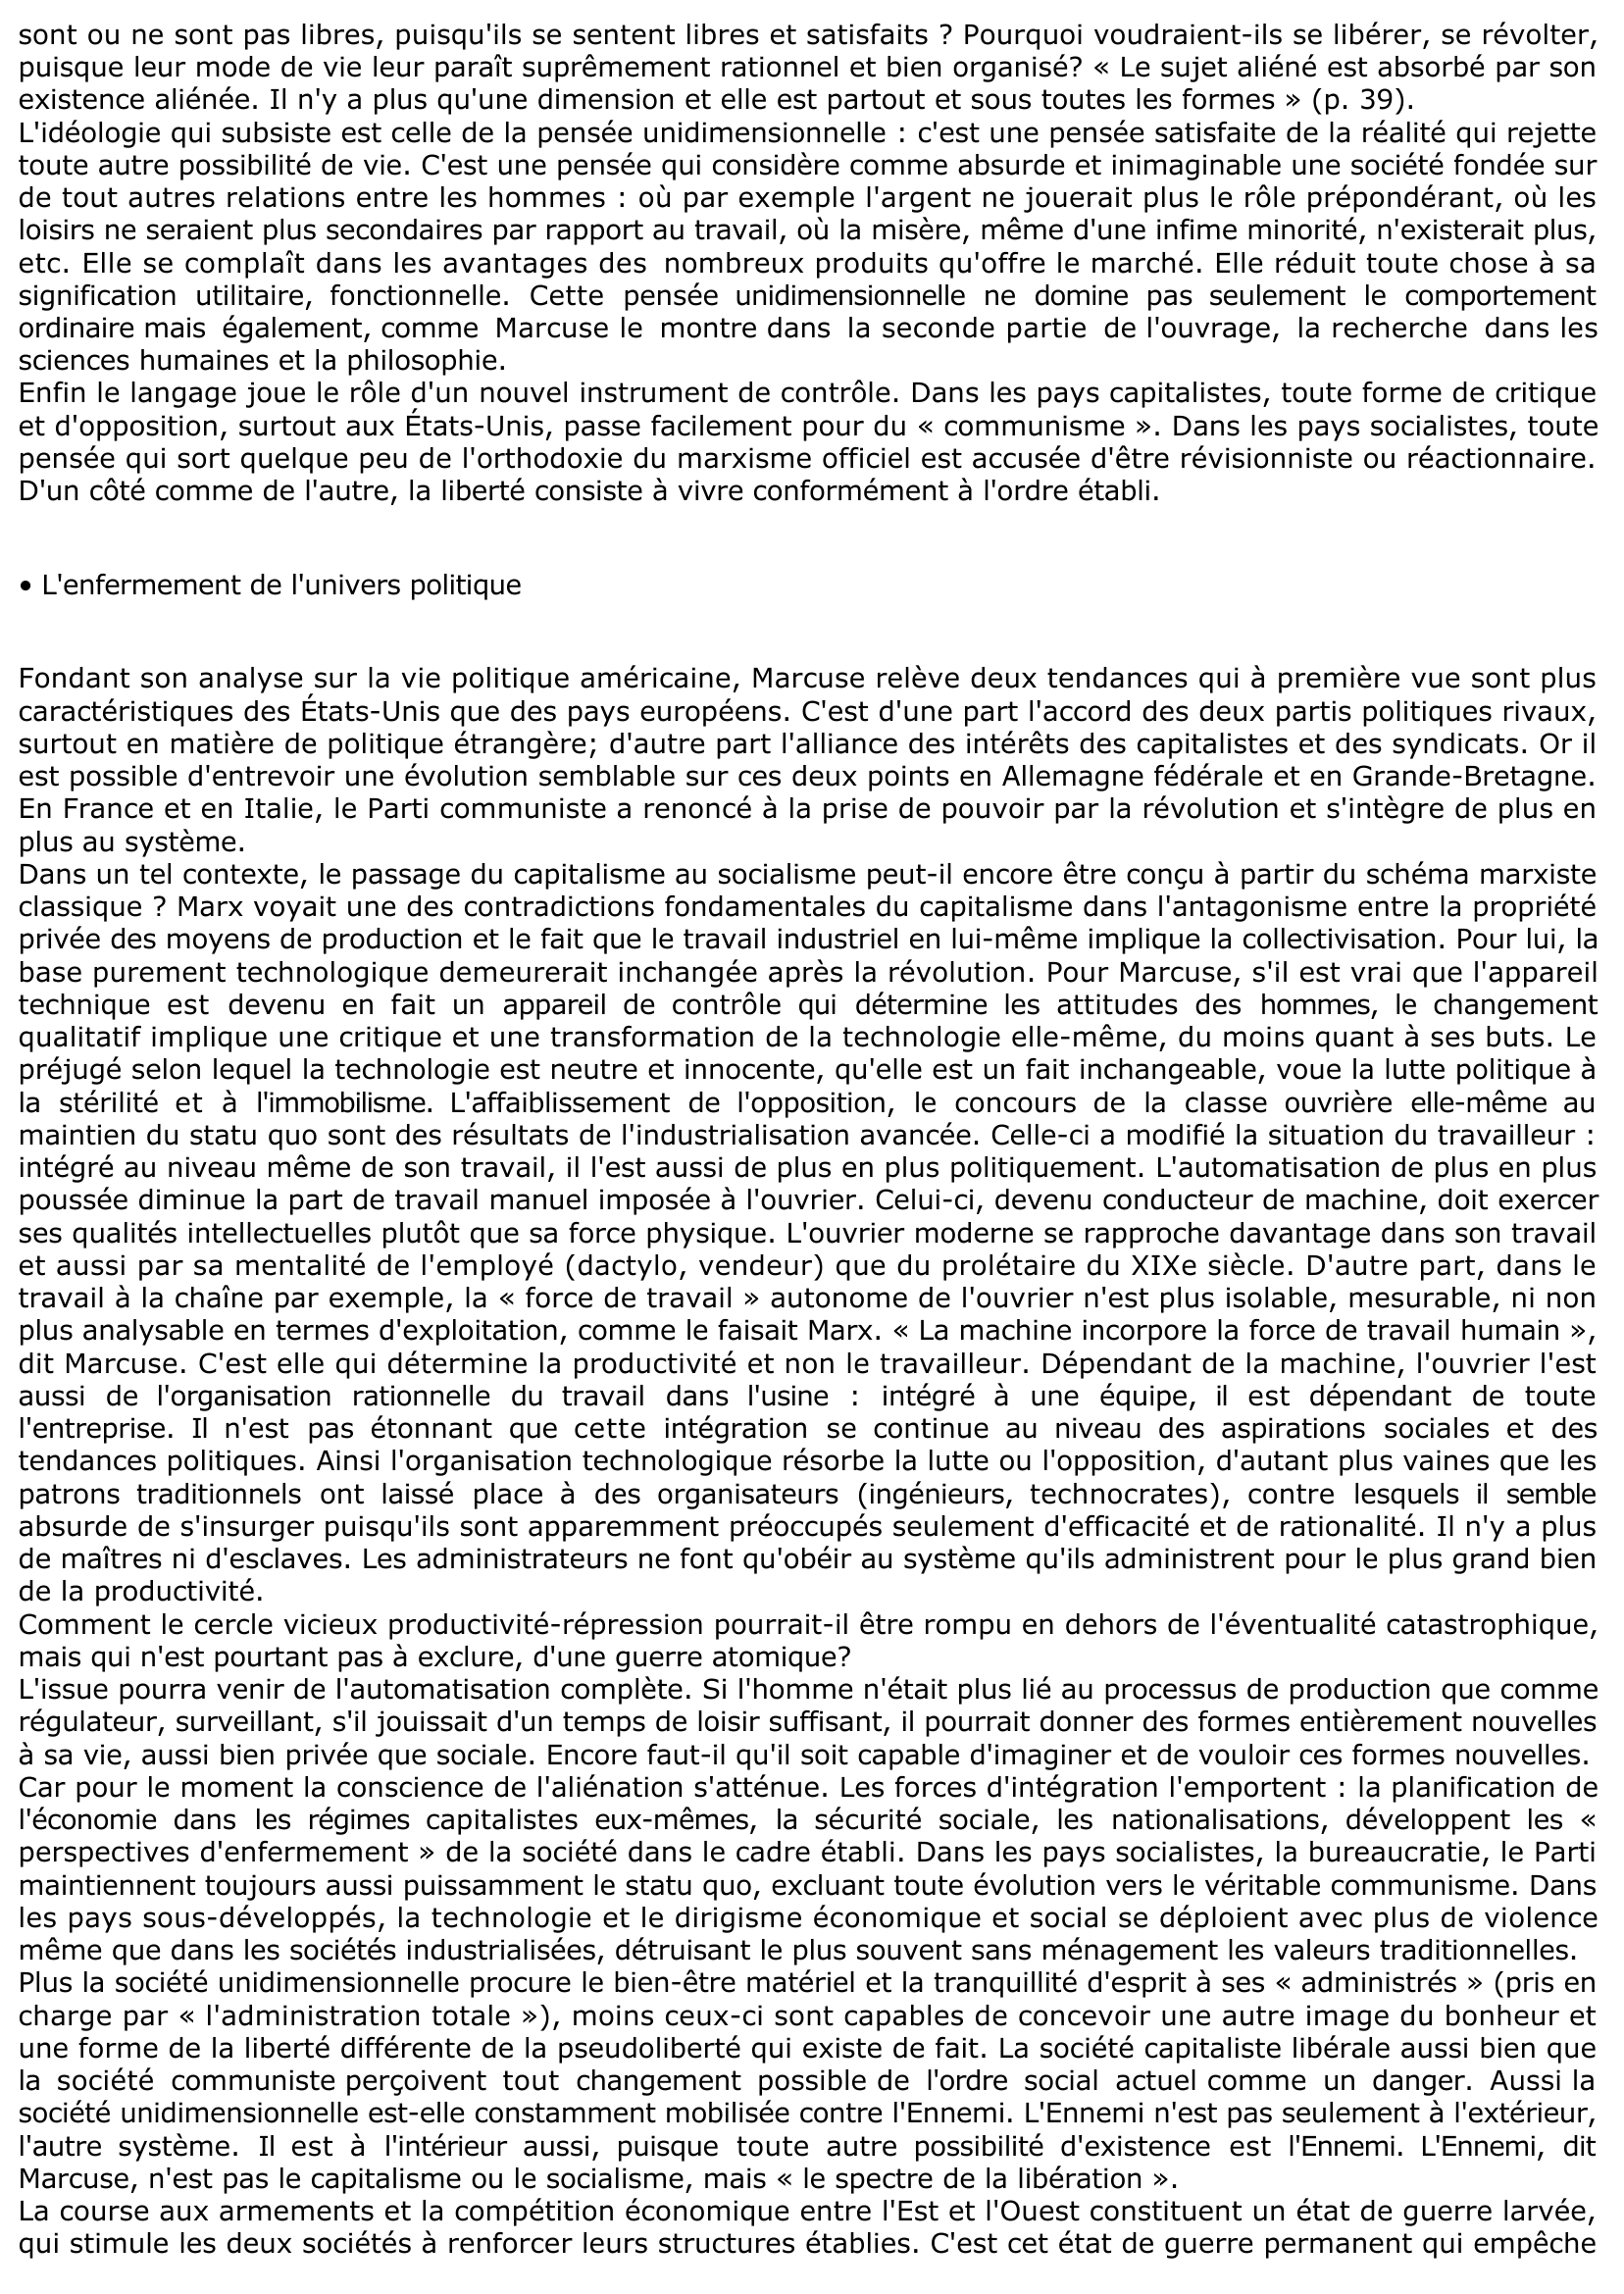 Prévisualisation du document L'HOMME UNIDIMENSIONNEL DE MARCUSE: ANALYSE DE LA PREMIÈRE PARTIE: LA SOCIÉTÉ UNIDIMENSIONNELLE